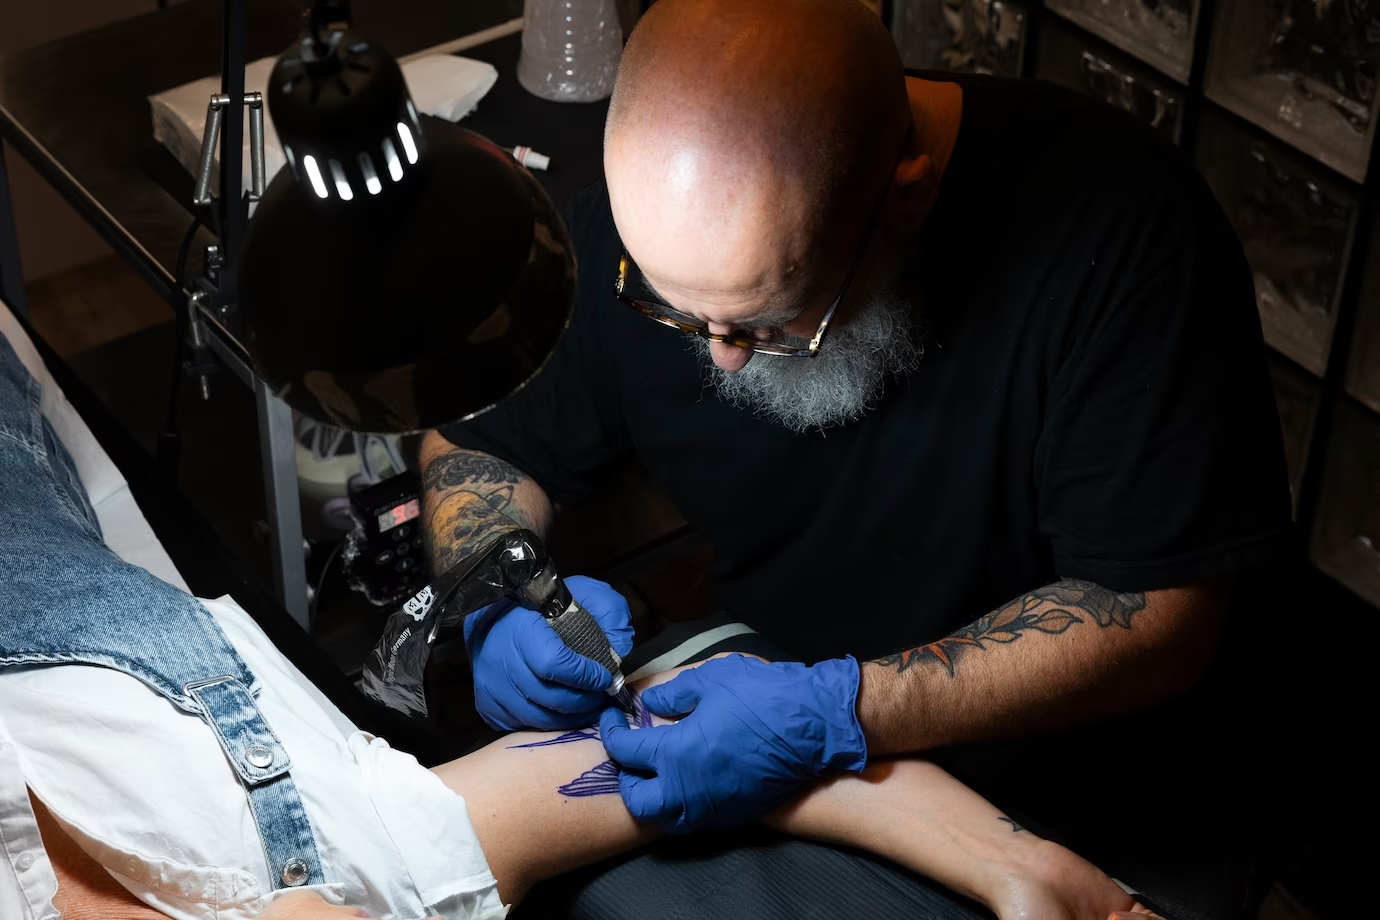 Tatuaże a moda: jakie trendy wprowadzają tatuaże na świat mody?